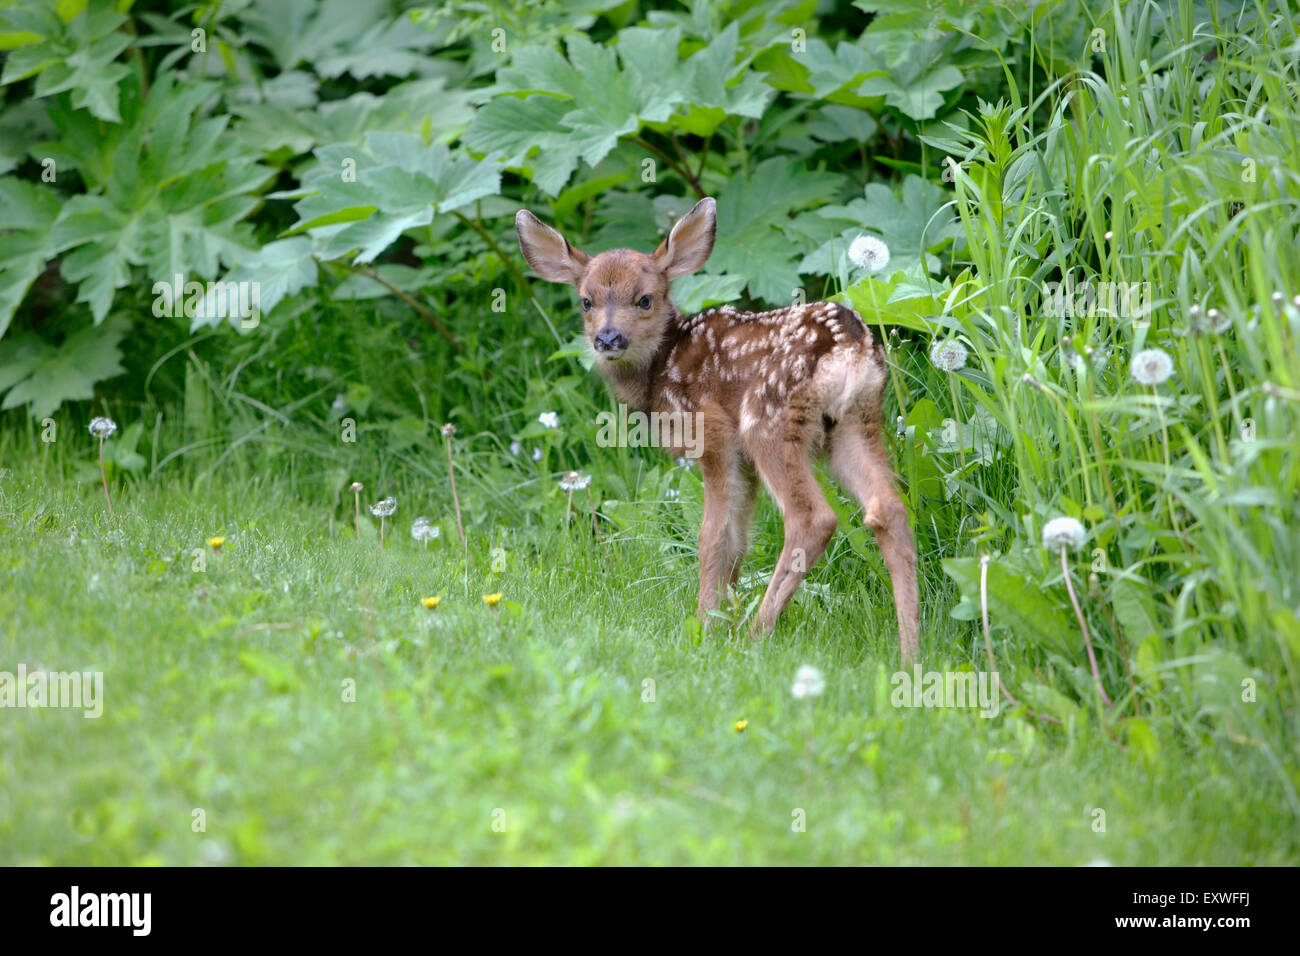 Cerf à queue noire ou fauve Deer standing in grass Banque D'Images